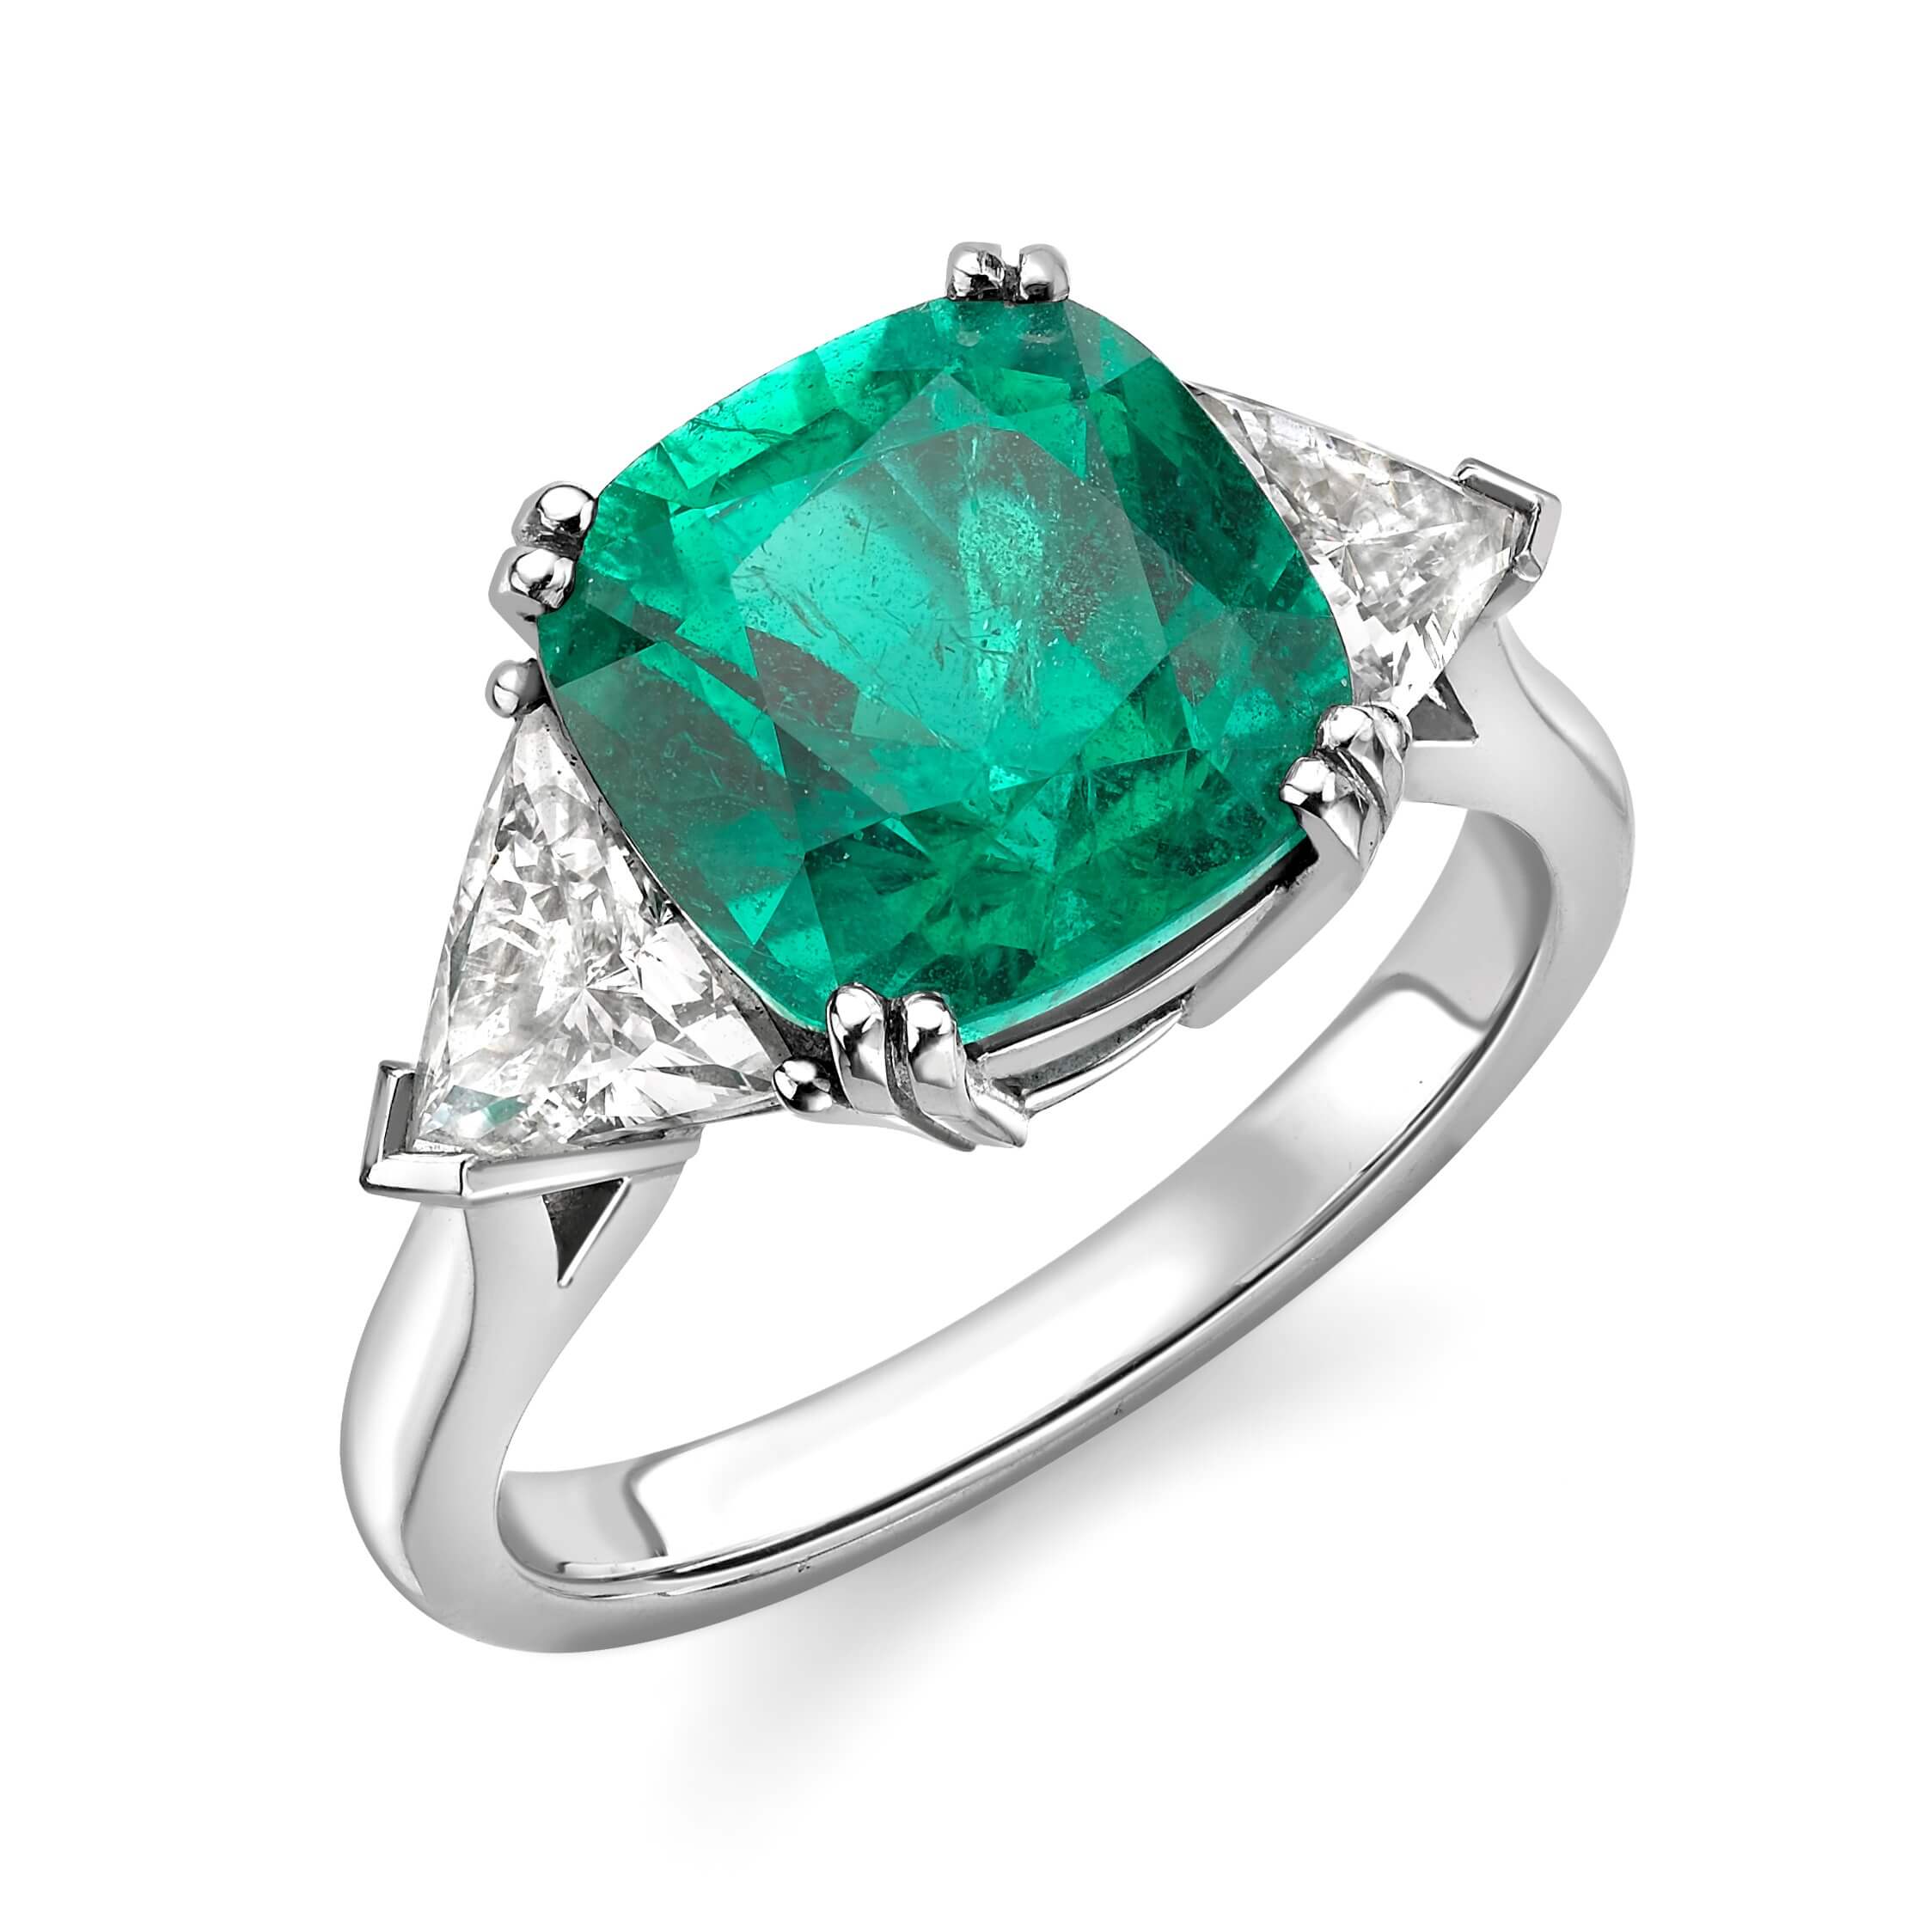 Zambian emerald and diamond ring - The Diamond Trust